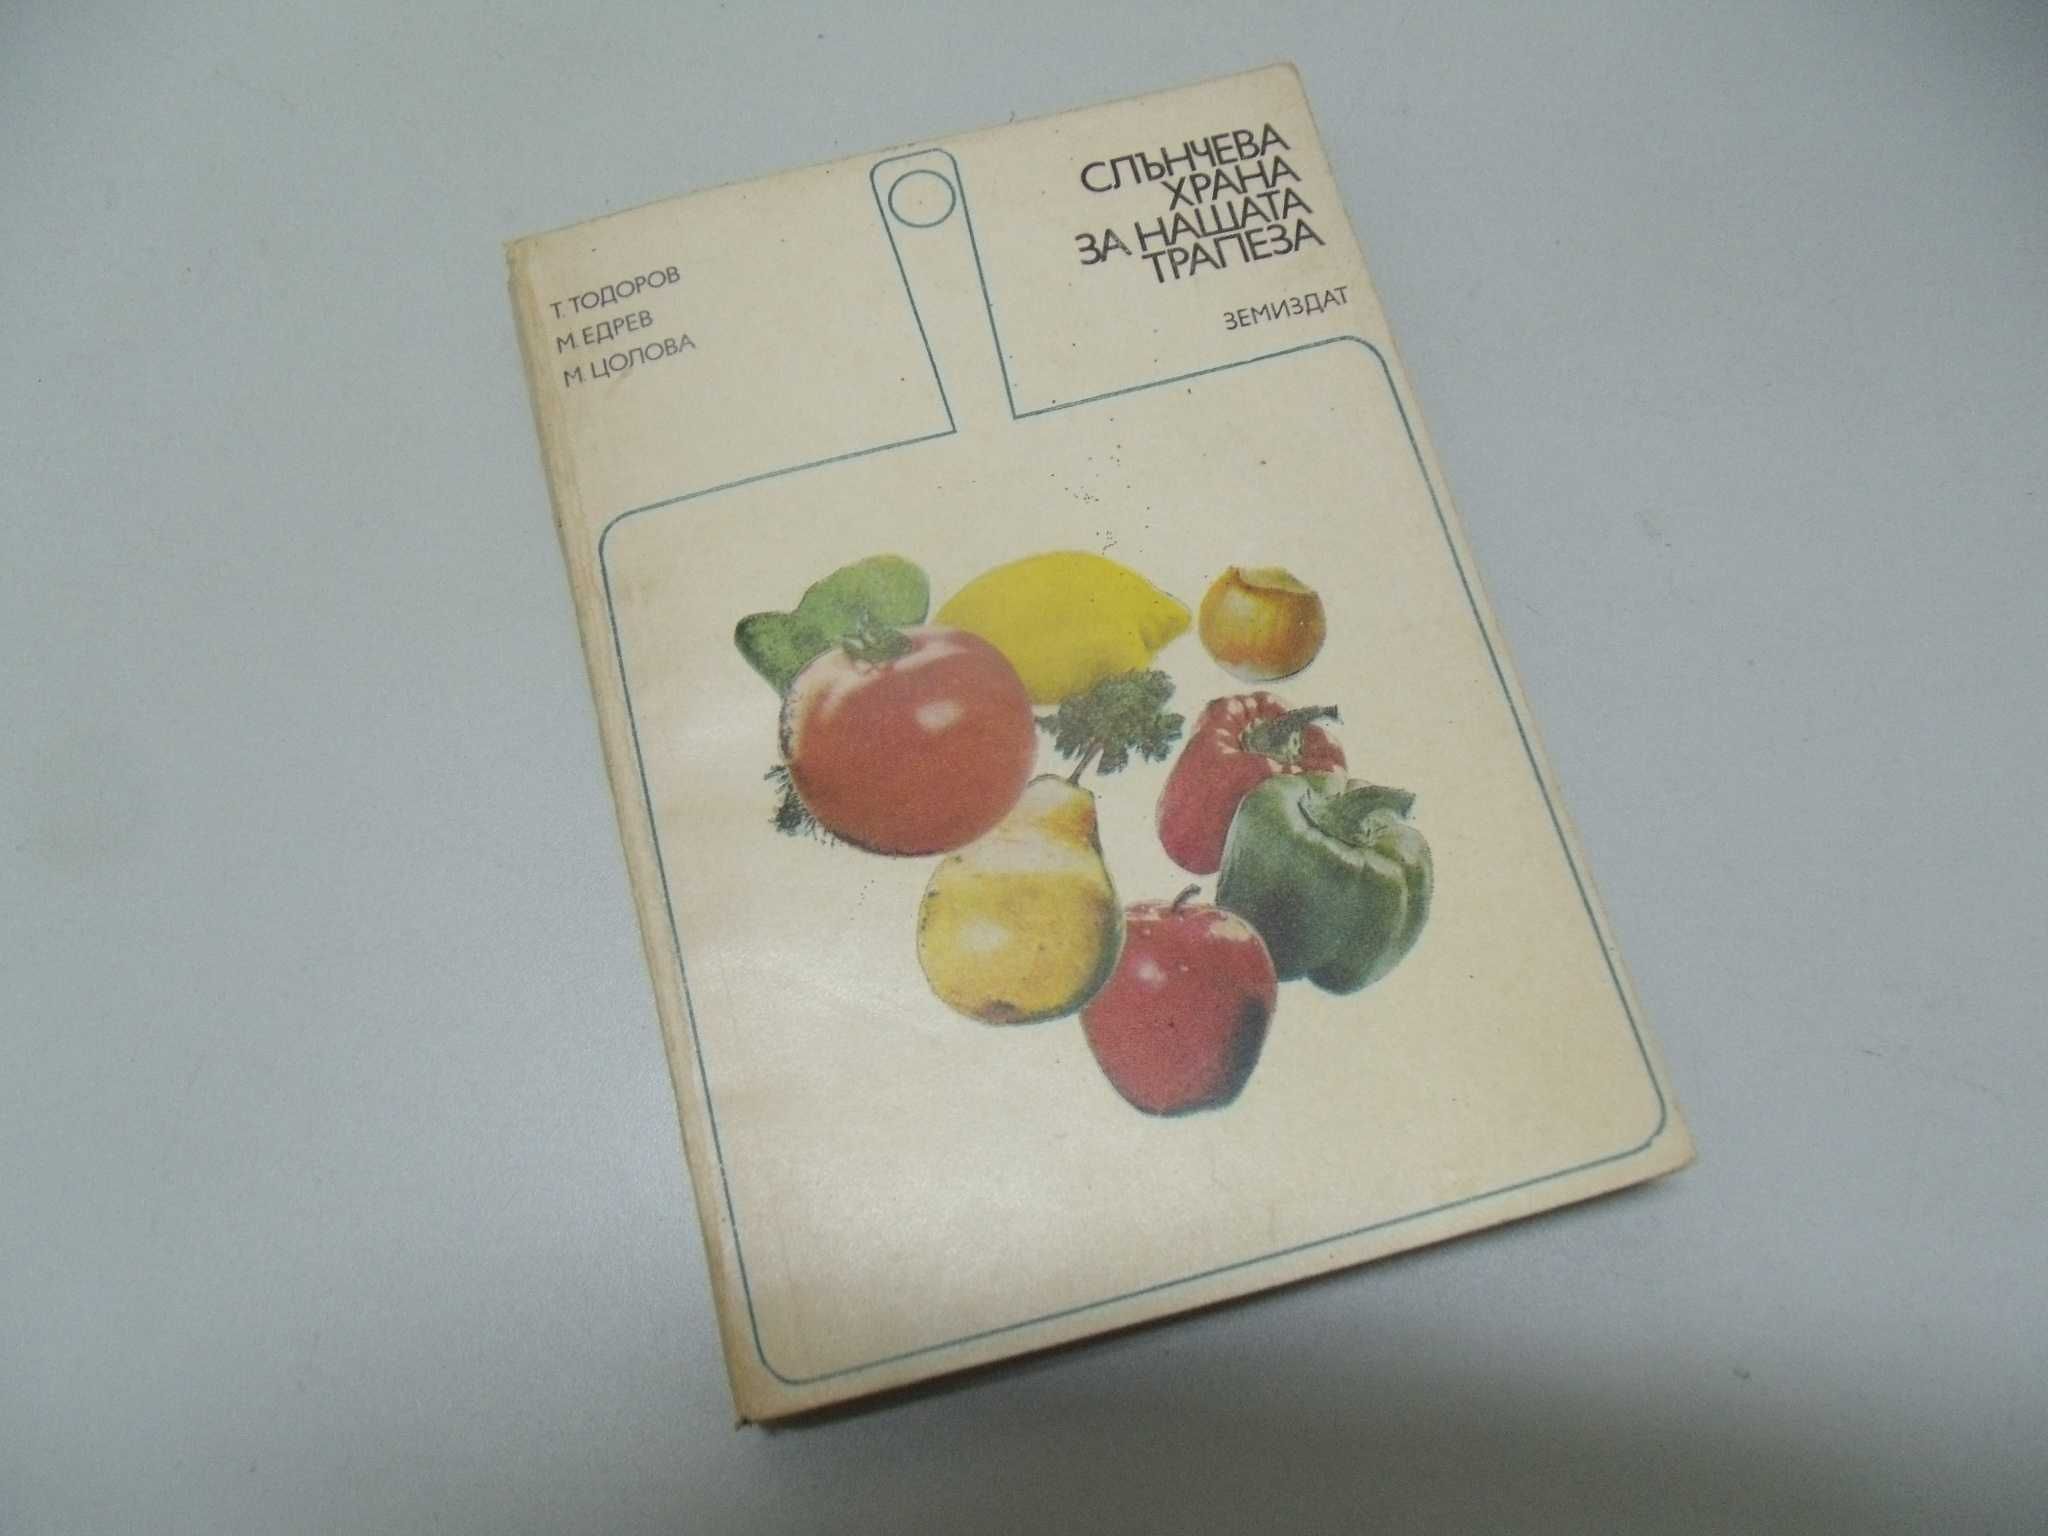 оф.6598 стара книга - Слънчева храна за нашата трапеза